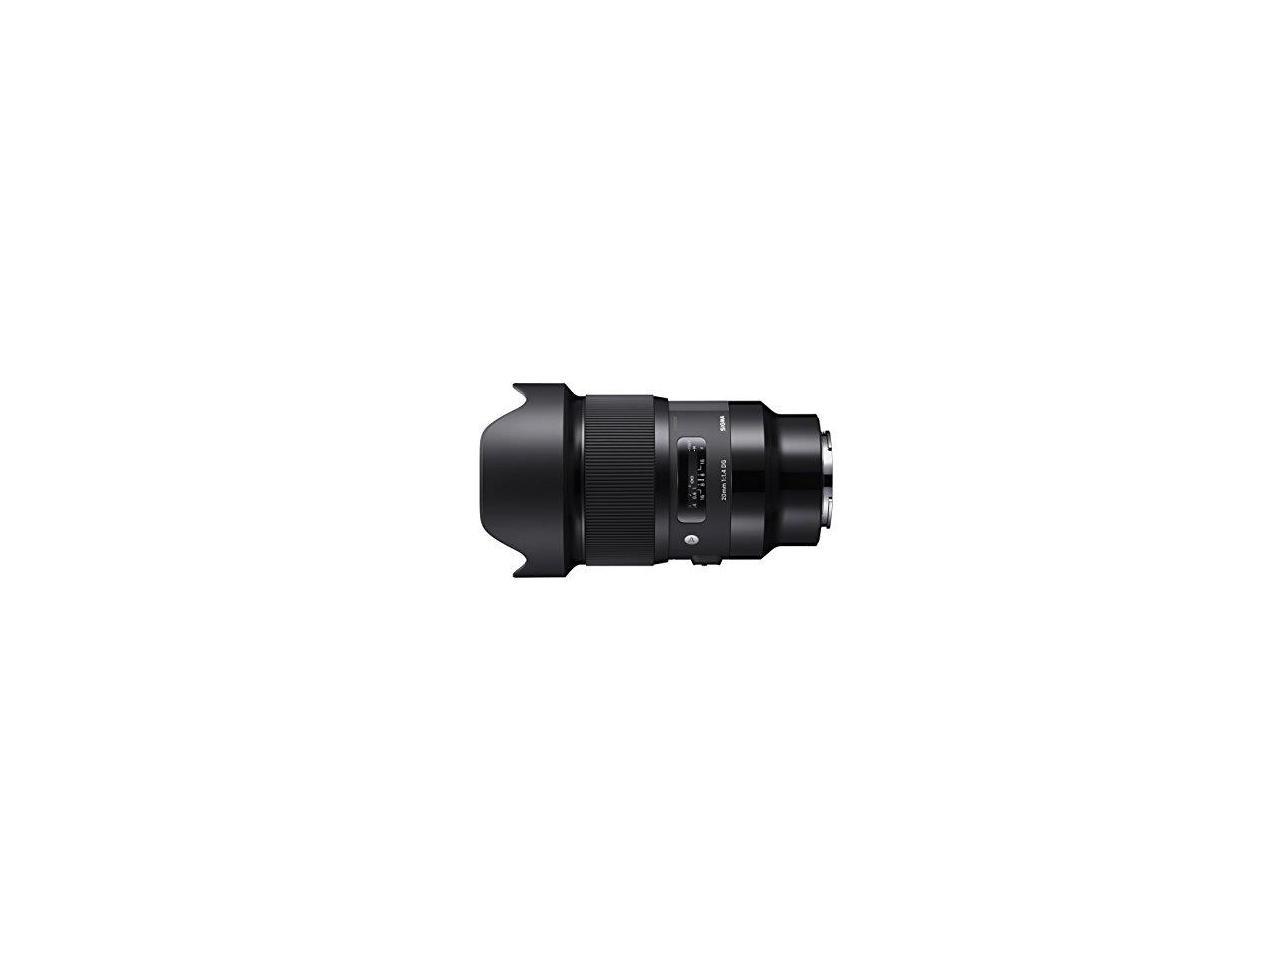 Sigma 20mm f/1.4 DG HSM Art Lens for Sony E Mount